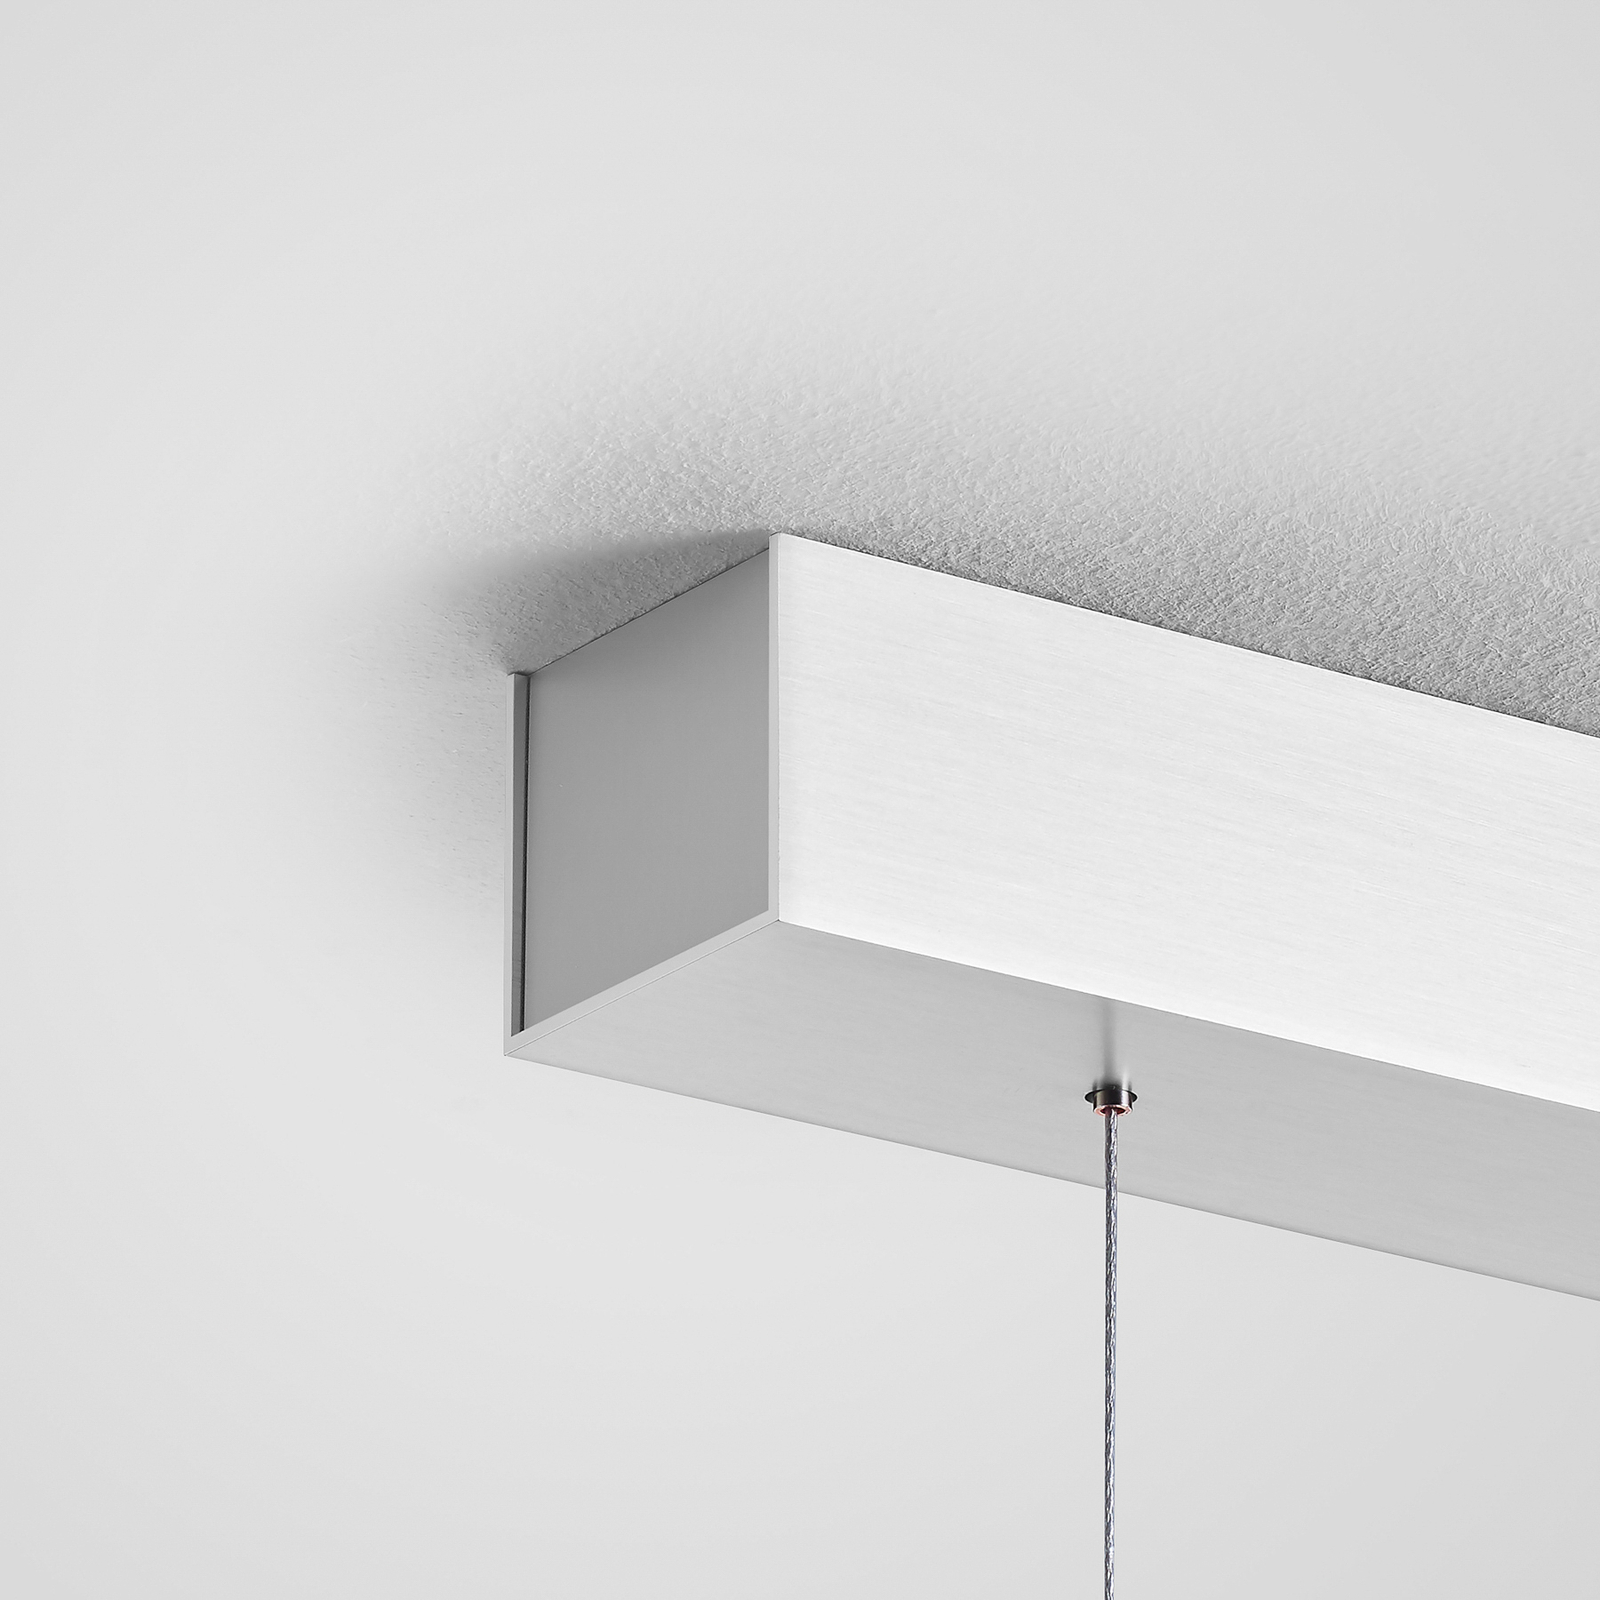 Quitani Keijo LED-es függesztett lámpa, nikkel/dió, 123 cm